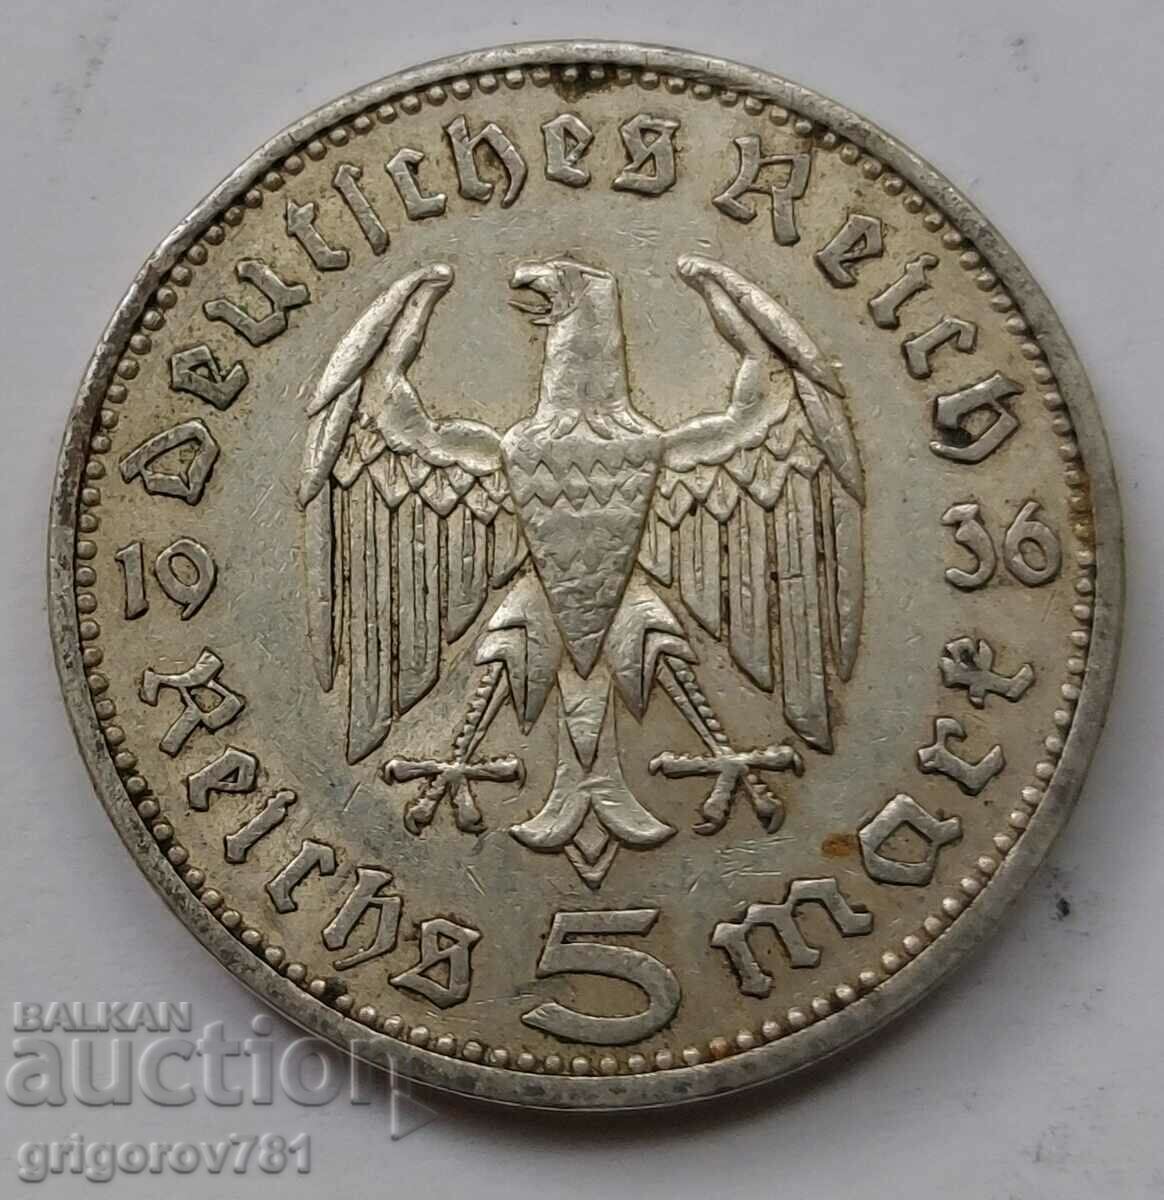 5 Mark Silver Γερμανία 1936 A III Reich Silver Coin #40